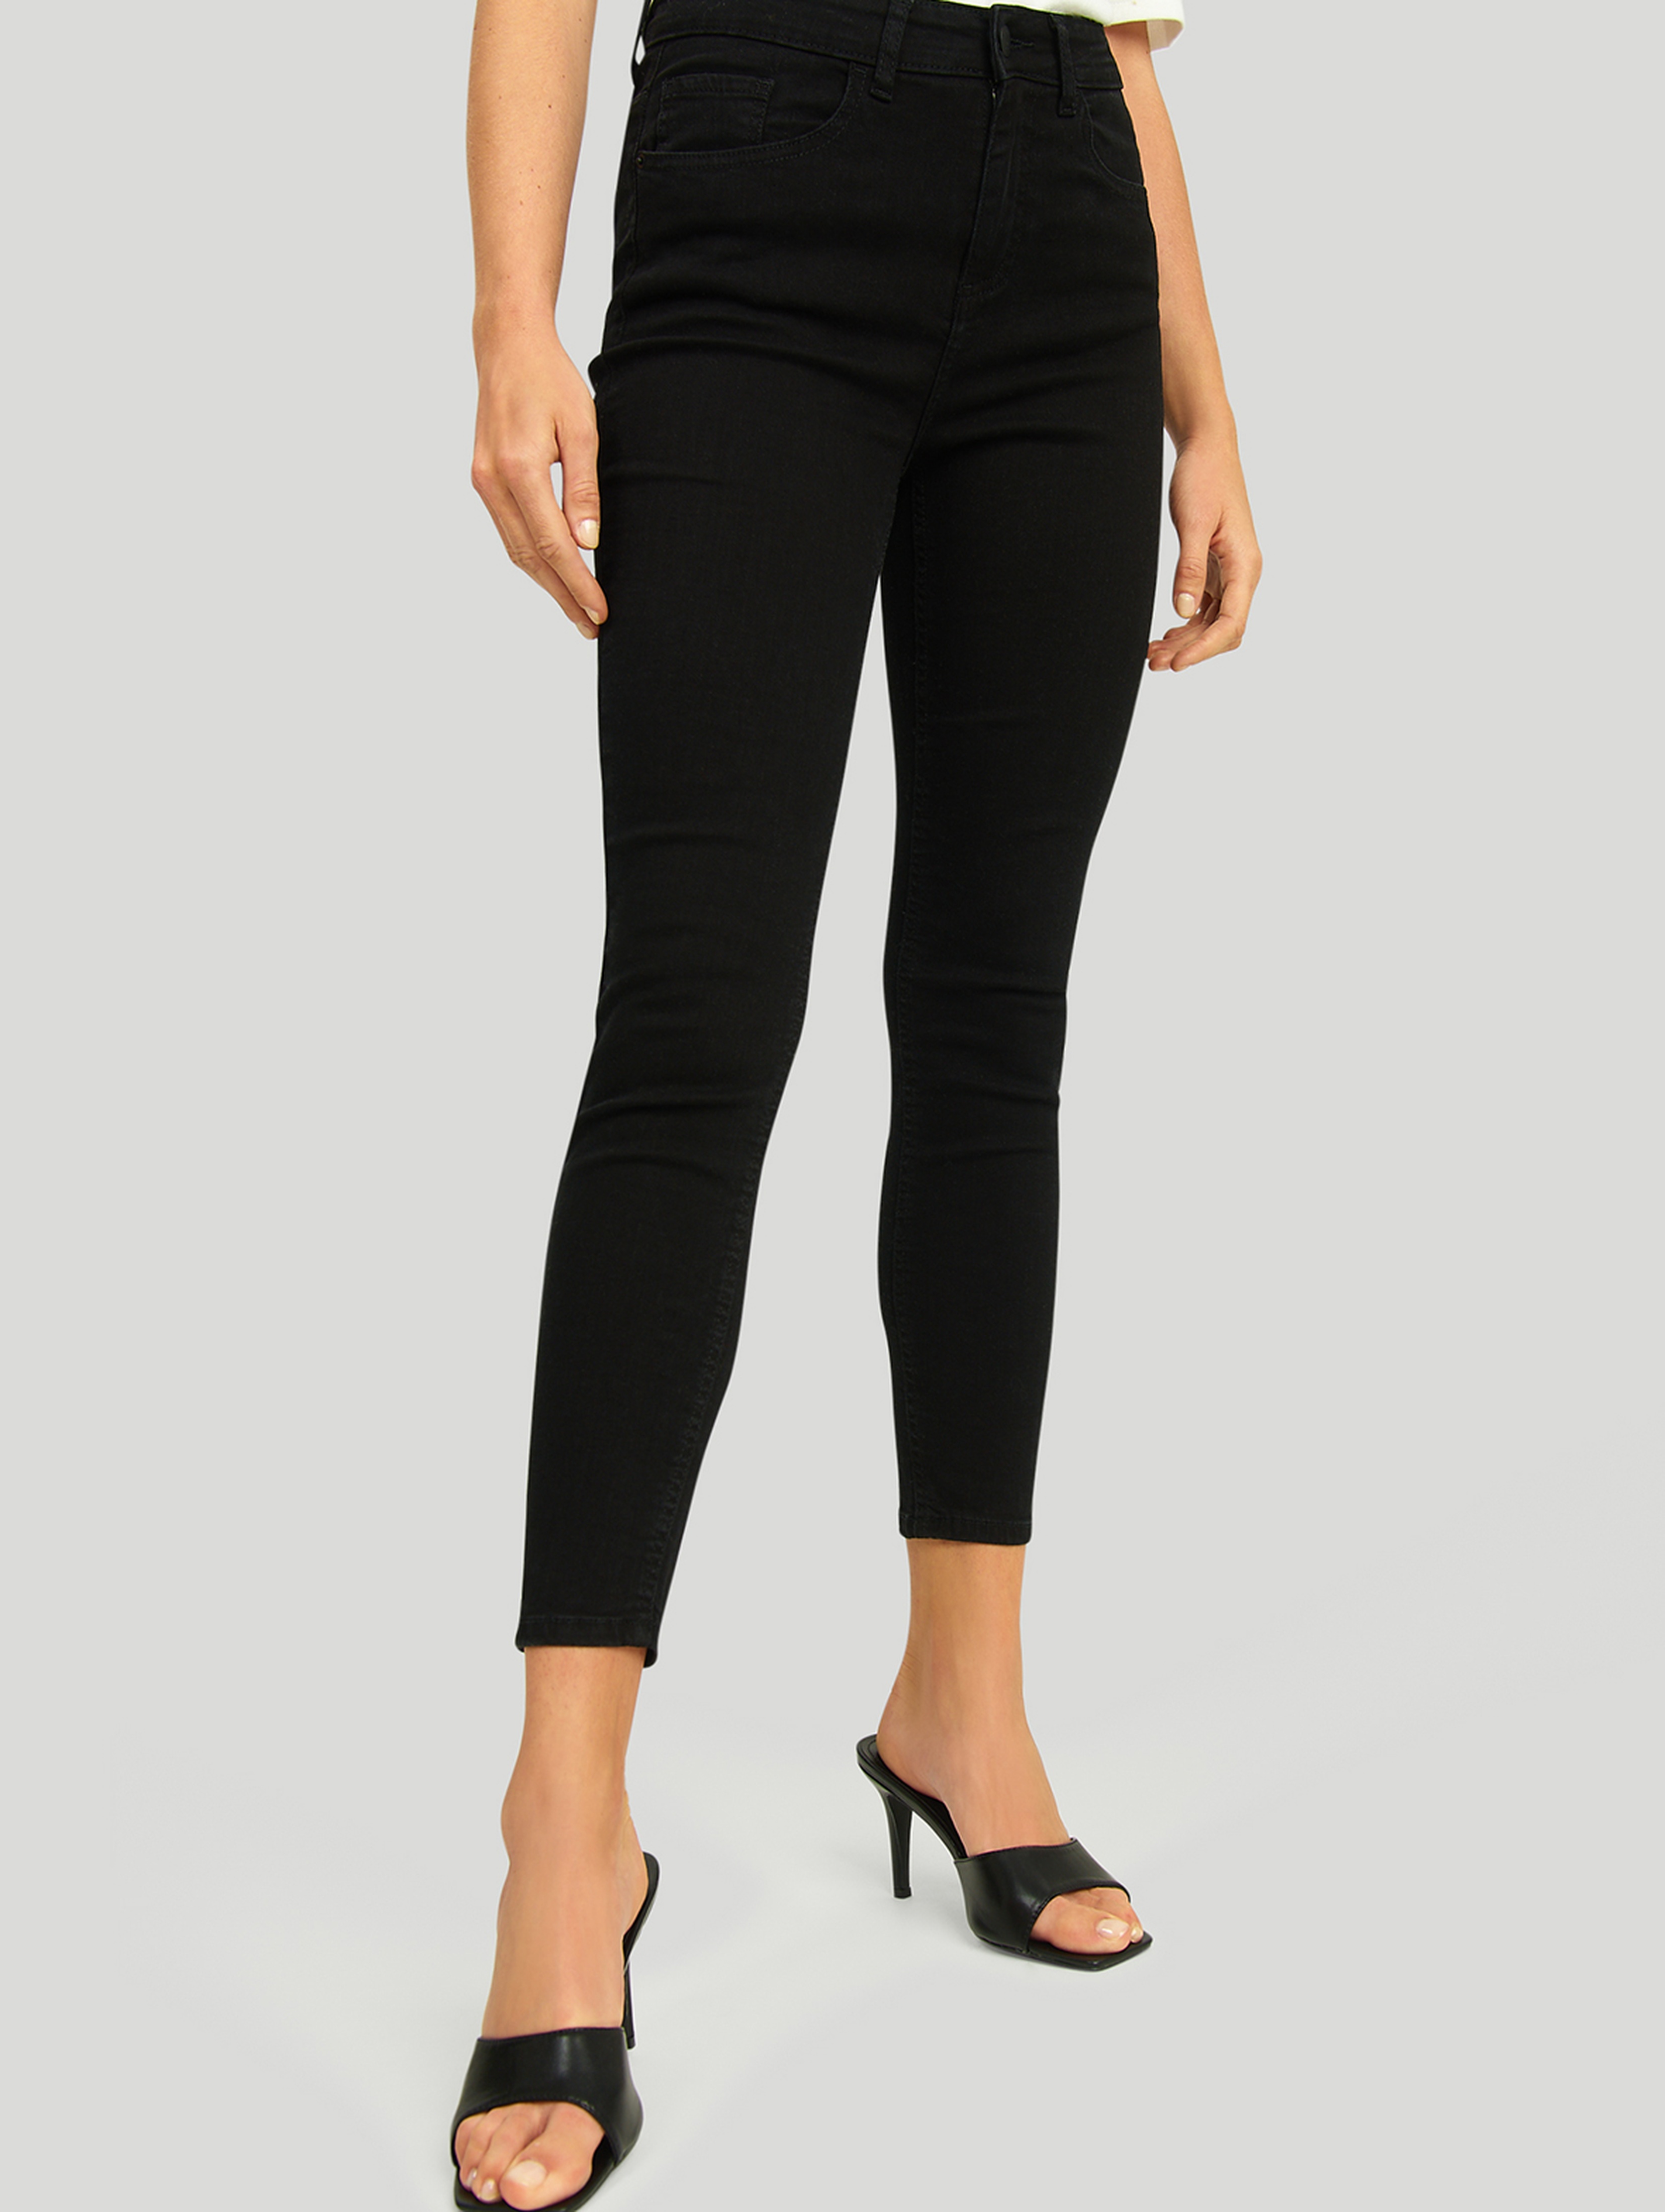 Jeansowe spodnie damskie o kroju slim fit - czarne